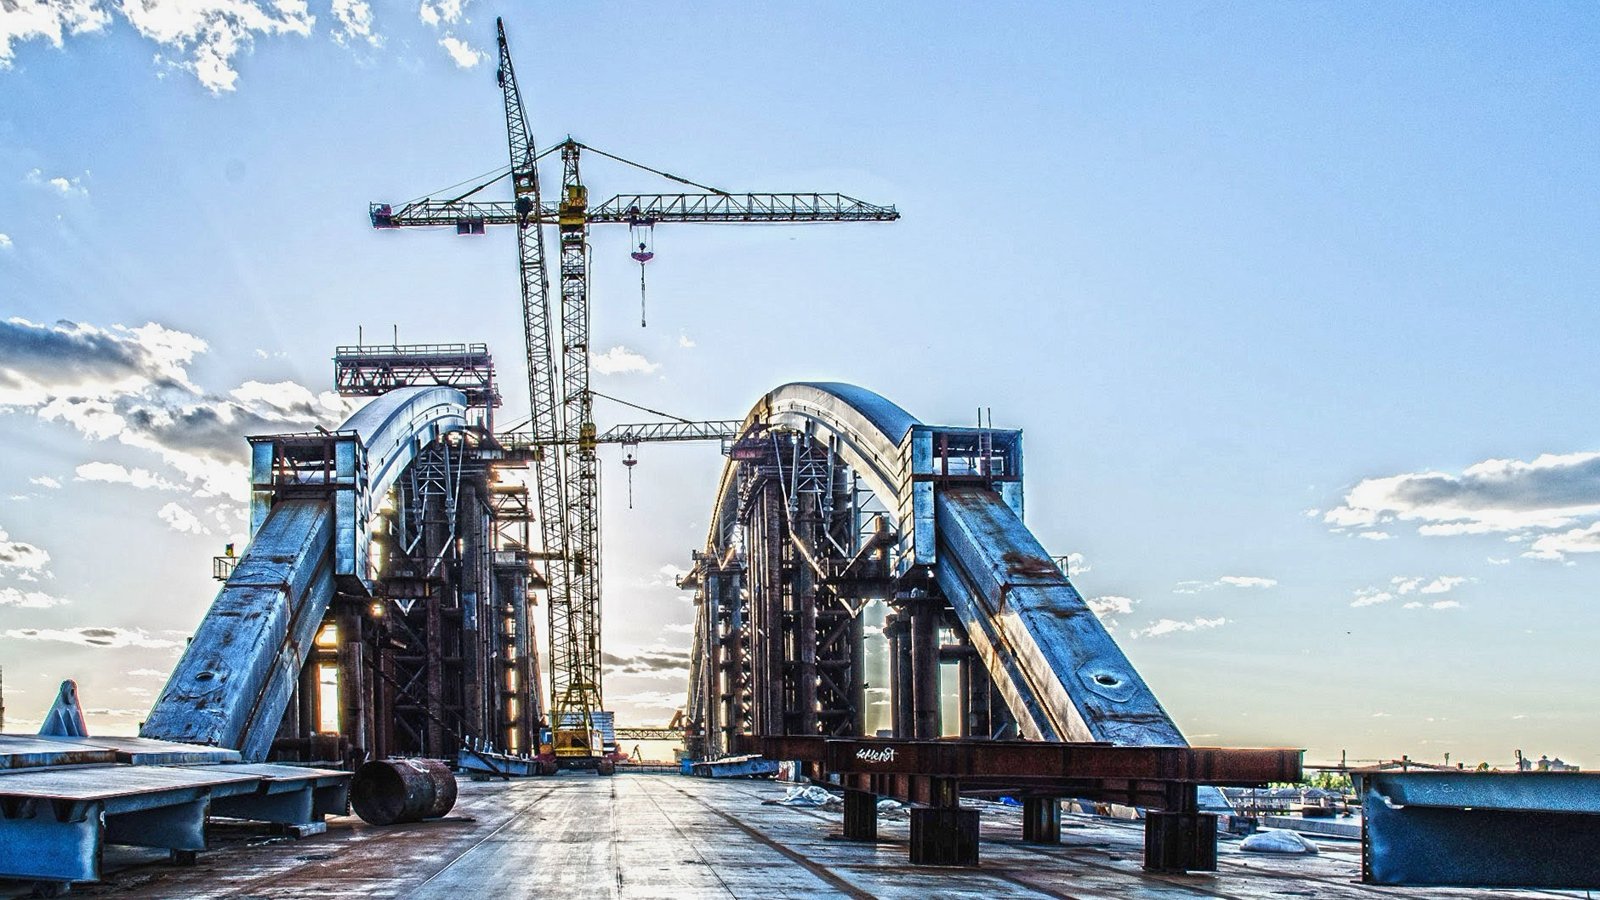 Podilsko-Voskresensky Bridge, Kiev